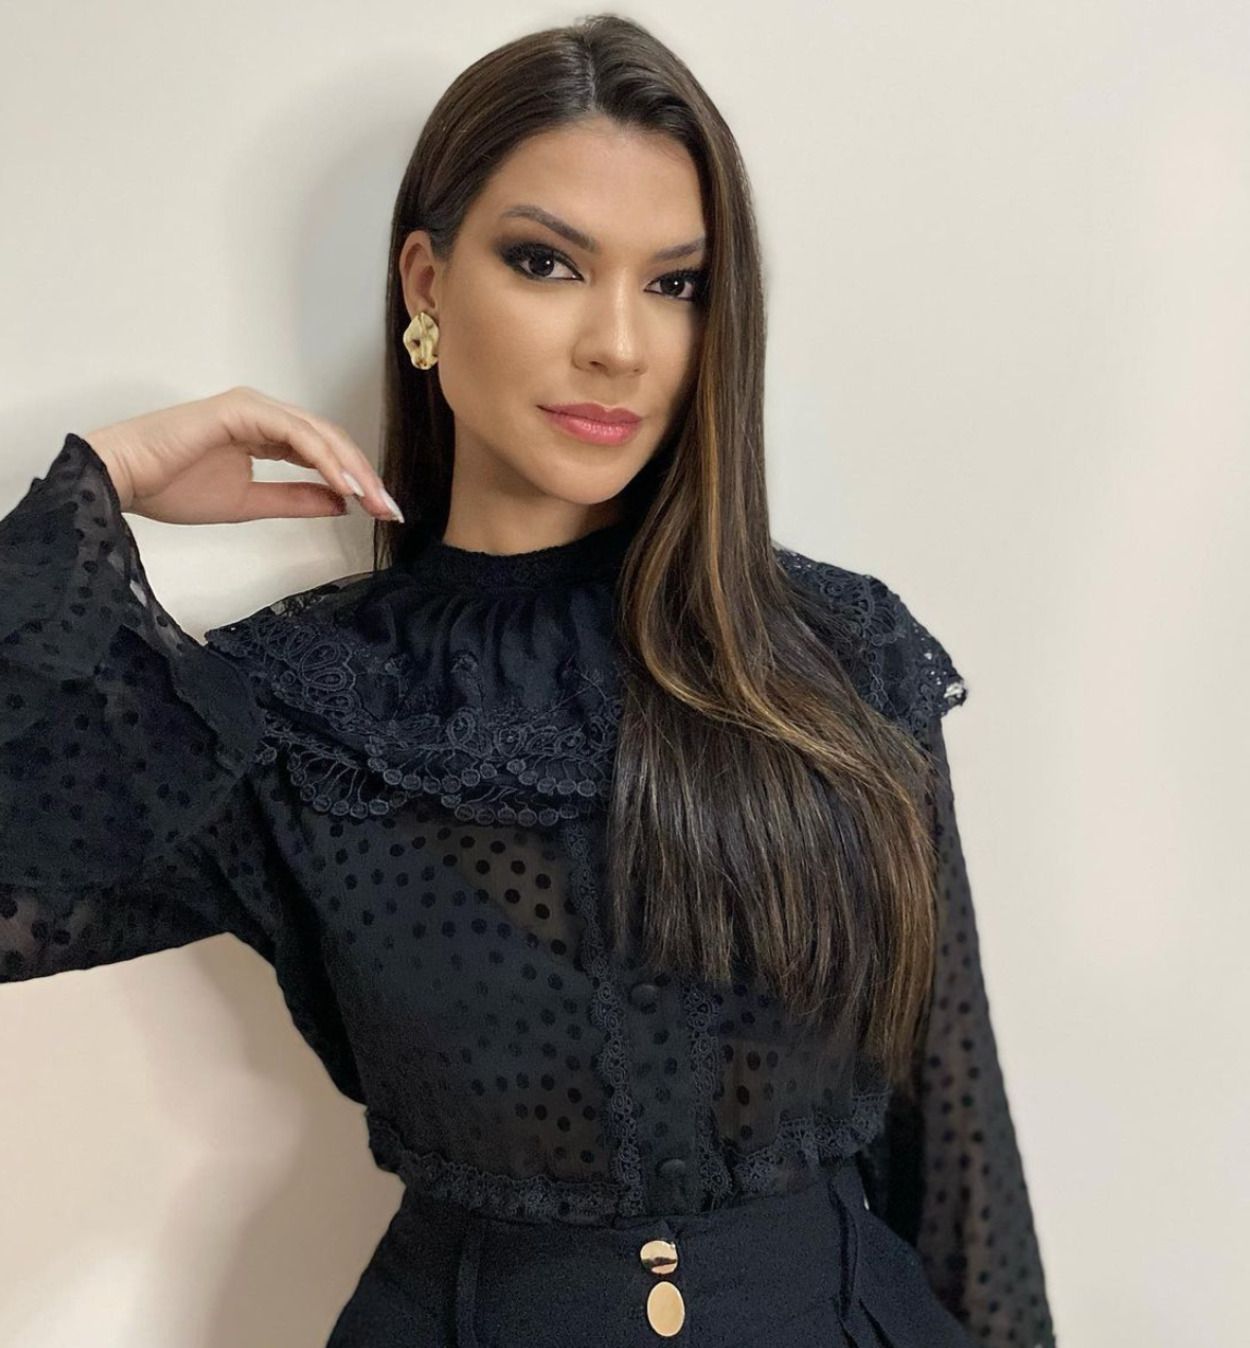 Muere Gleycy Correia, Miss Brasil 2018, tras una operación de amígdalas